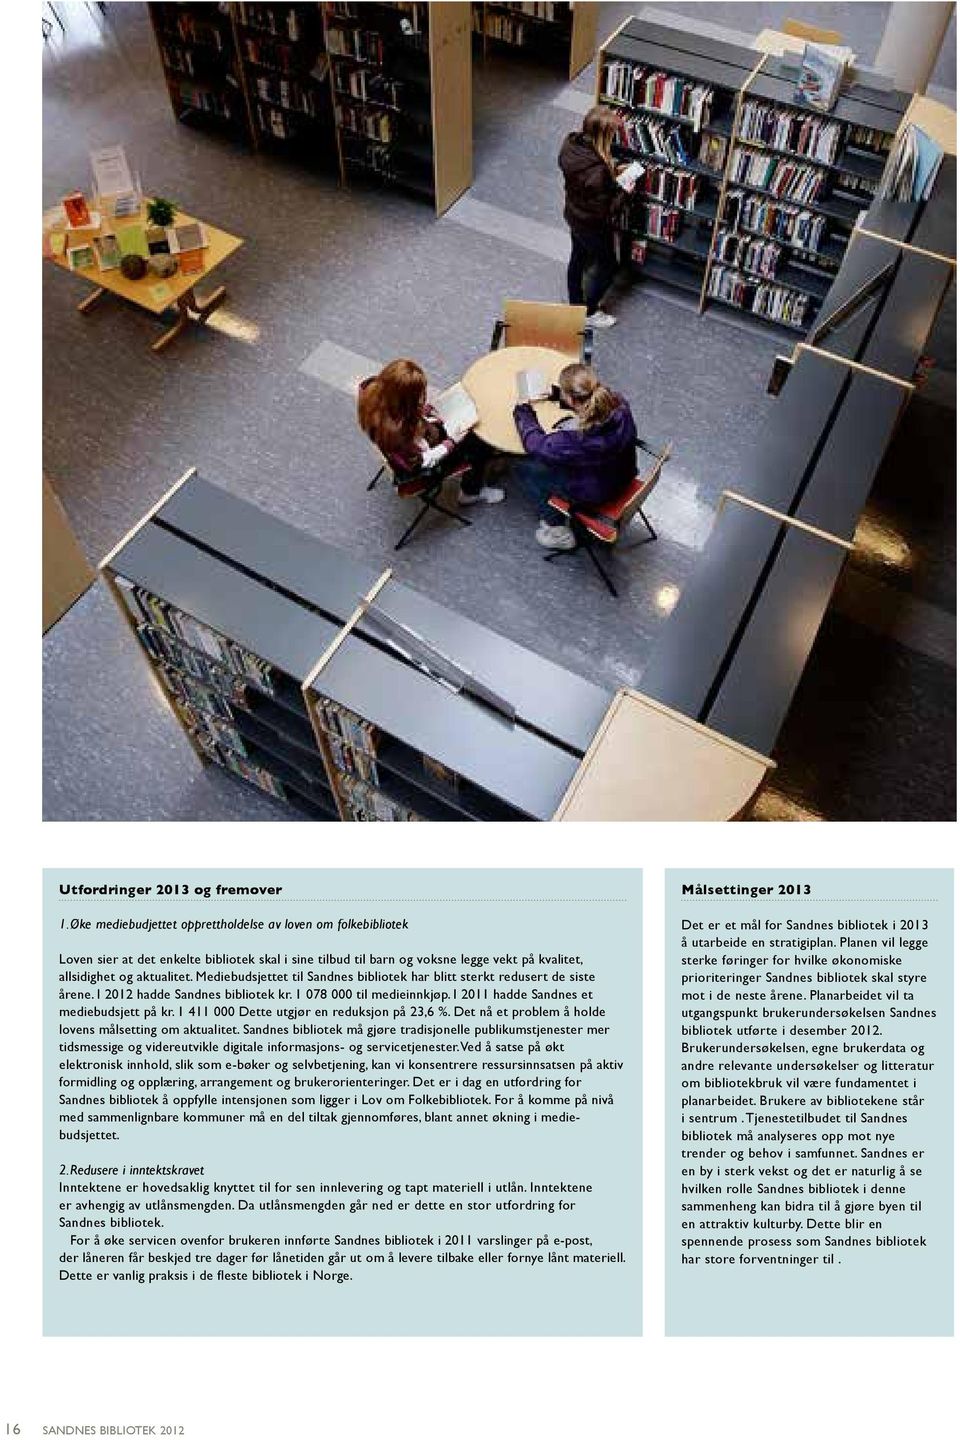 Mediebudsjettet til Sandnes bibliotek ar blitt sterkt redusert de siste årene. I 2012 adde Sandnes bibliotek kr. 1 078 000 til medieinnkjøp. I 2011 adde Sandnes et mediebudsjett på kr.